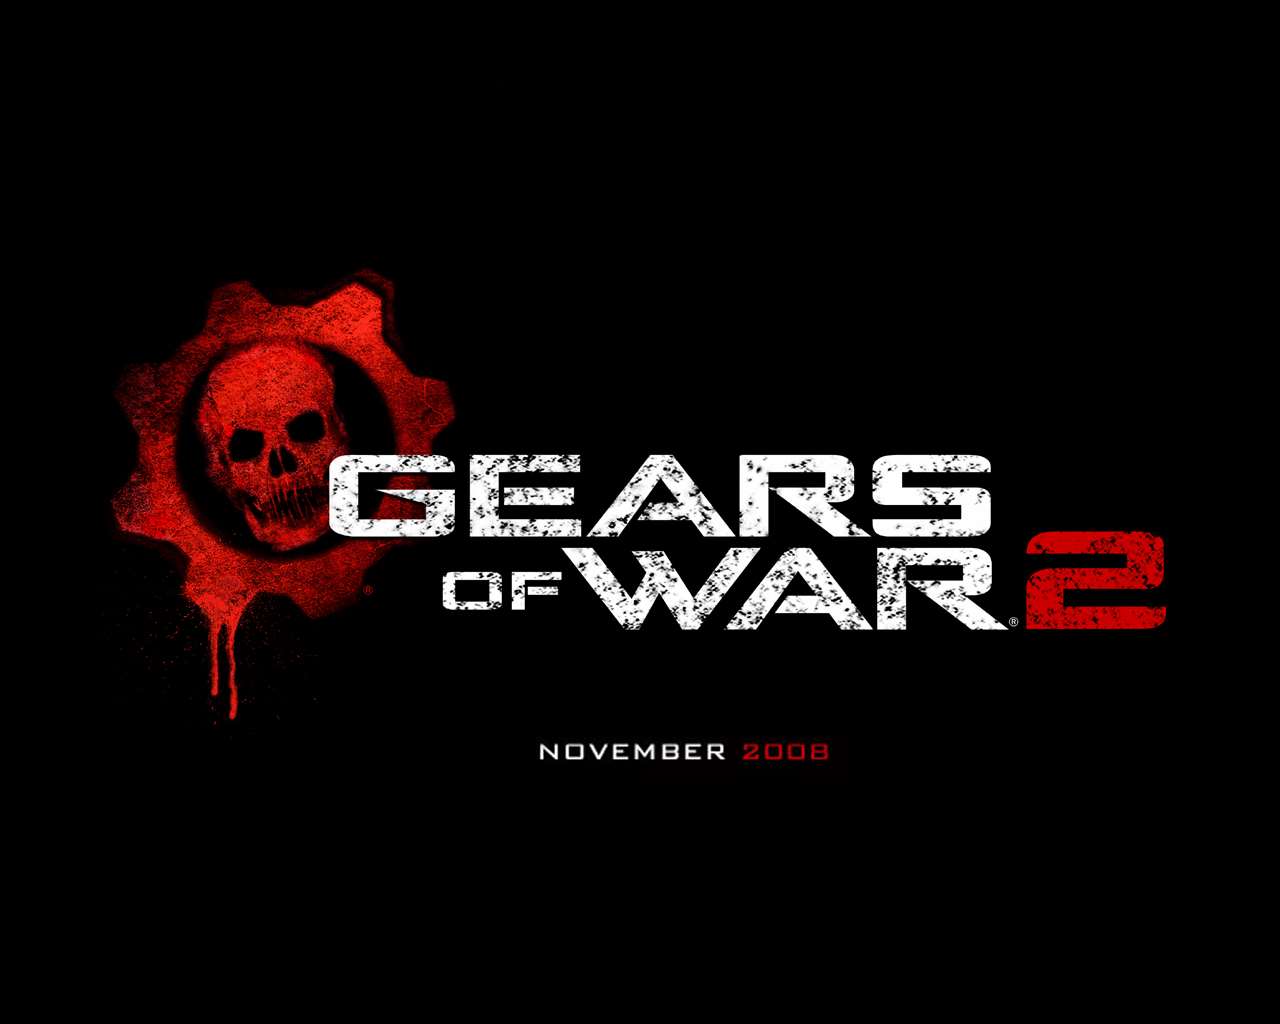 Official Gears Of War 2 Wallpaper 1 (1280 x 1024)